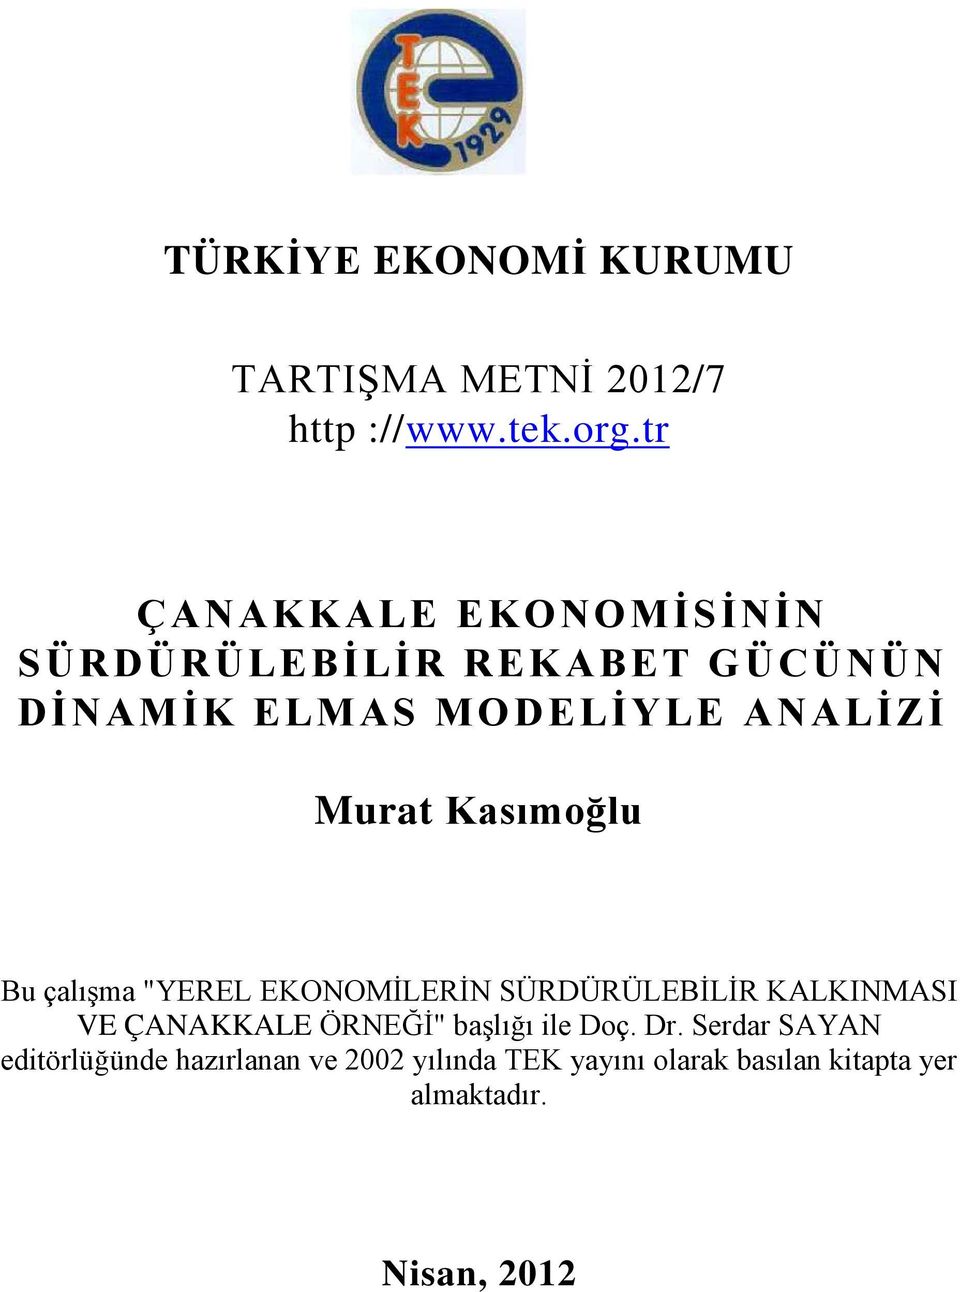 Kasımoğlu Bu çalışma "YEREL EKONOMİLERİN SÜRDÜRÜLEBİLİR KALKINMASI VE ÇANAKKALE ÖRNEĞİ" başlığı